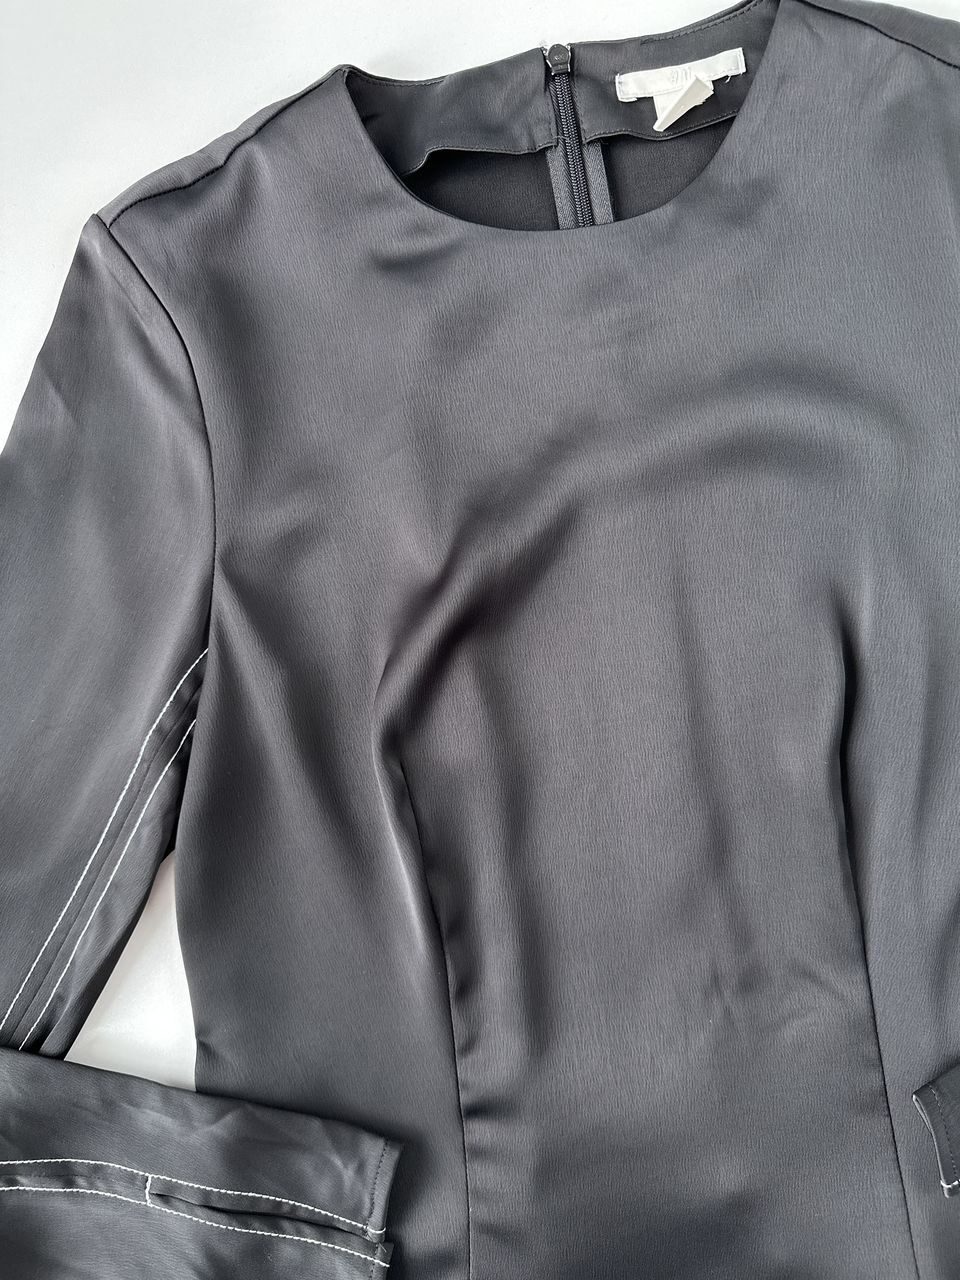 Блуза черного цвета из атласной ткани с длинными рукавами, застежка-молния сзади с потайным крючком на шее, разрезы внизу рукавов размер  EUR 36 (42 RUS) H&M